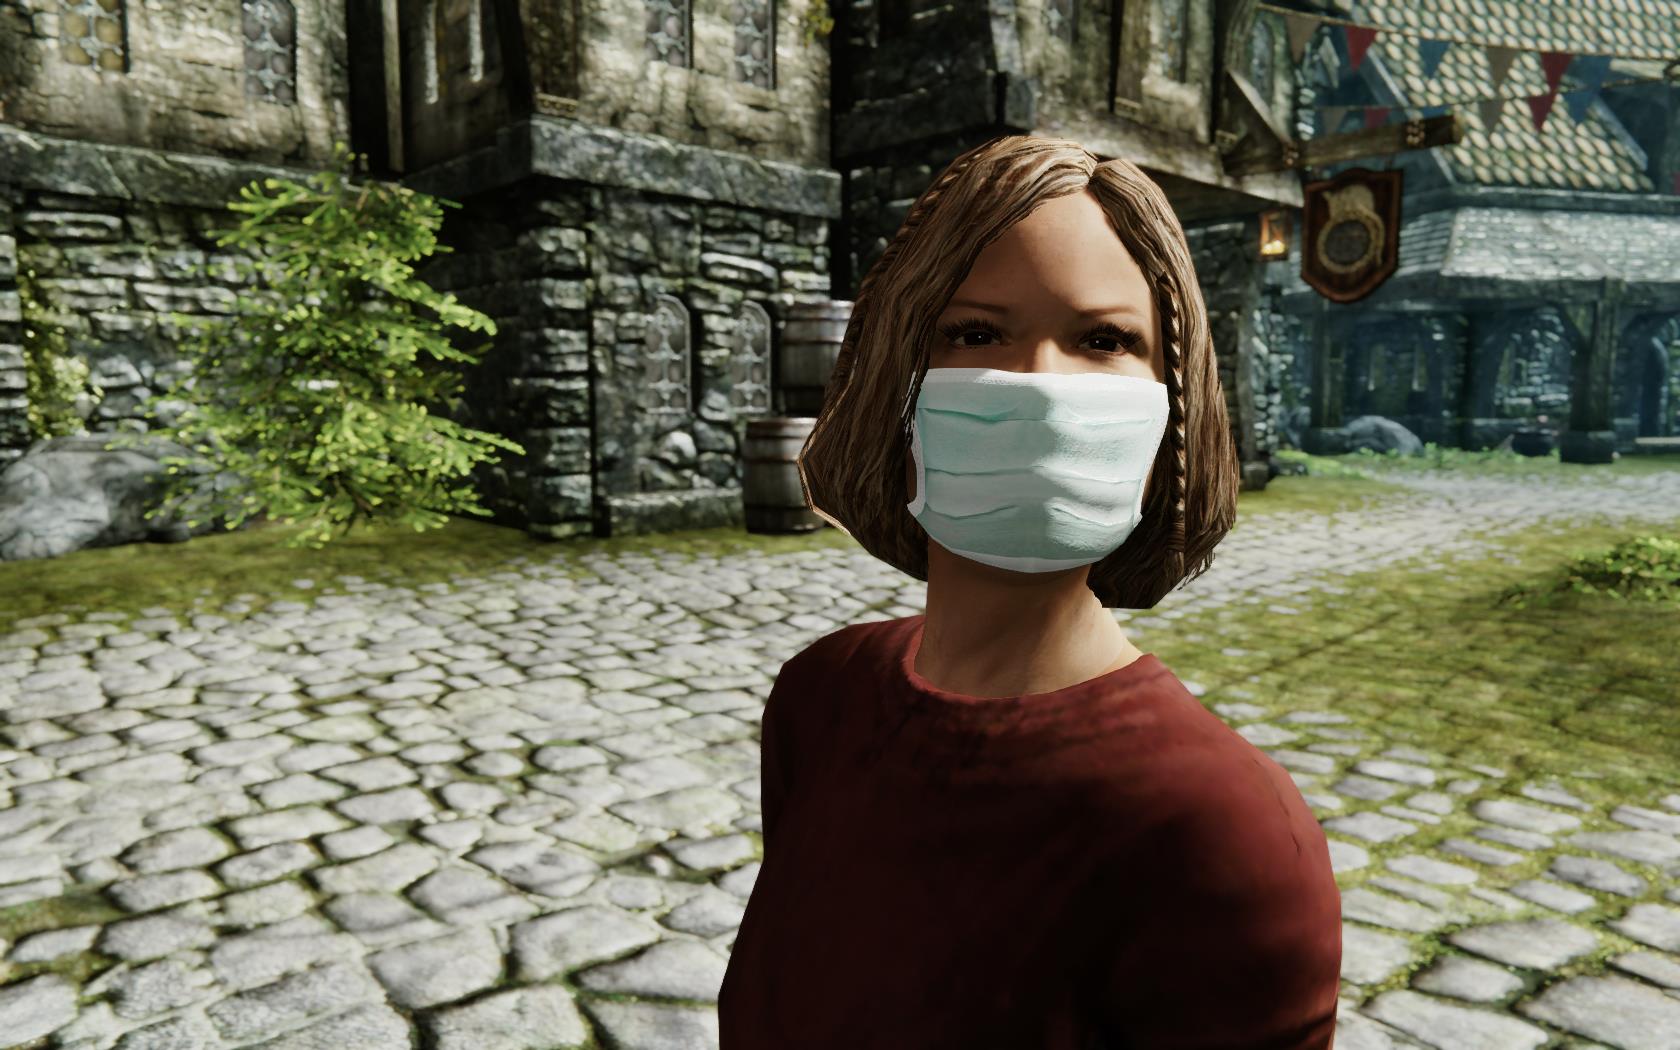 スカイリム でウイルスパンデミックを再現したmod がリリース Npcはマスクを着けて社会的距離をとるようになり 家から出なくなるのでゲームはクリア不可能に